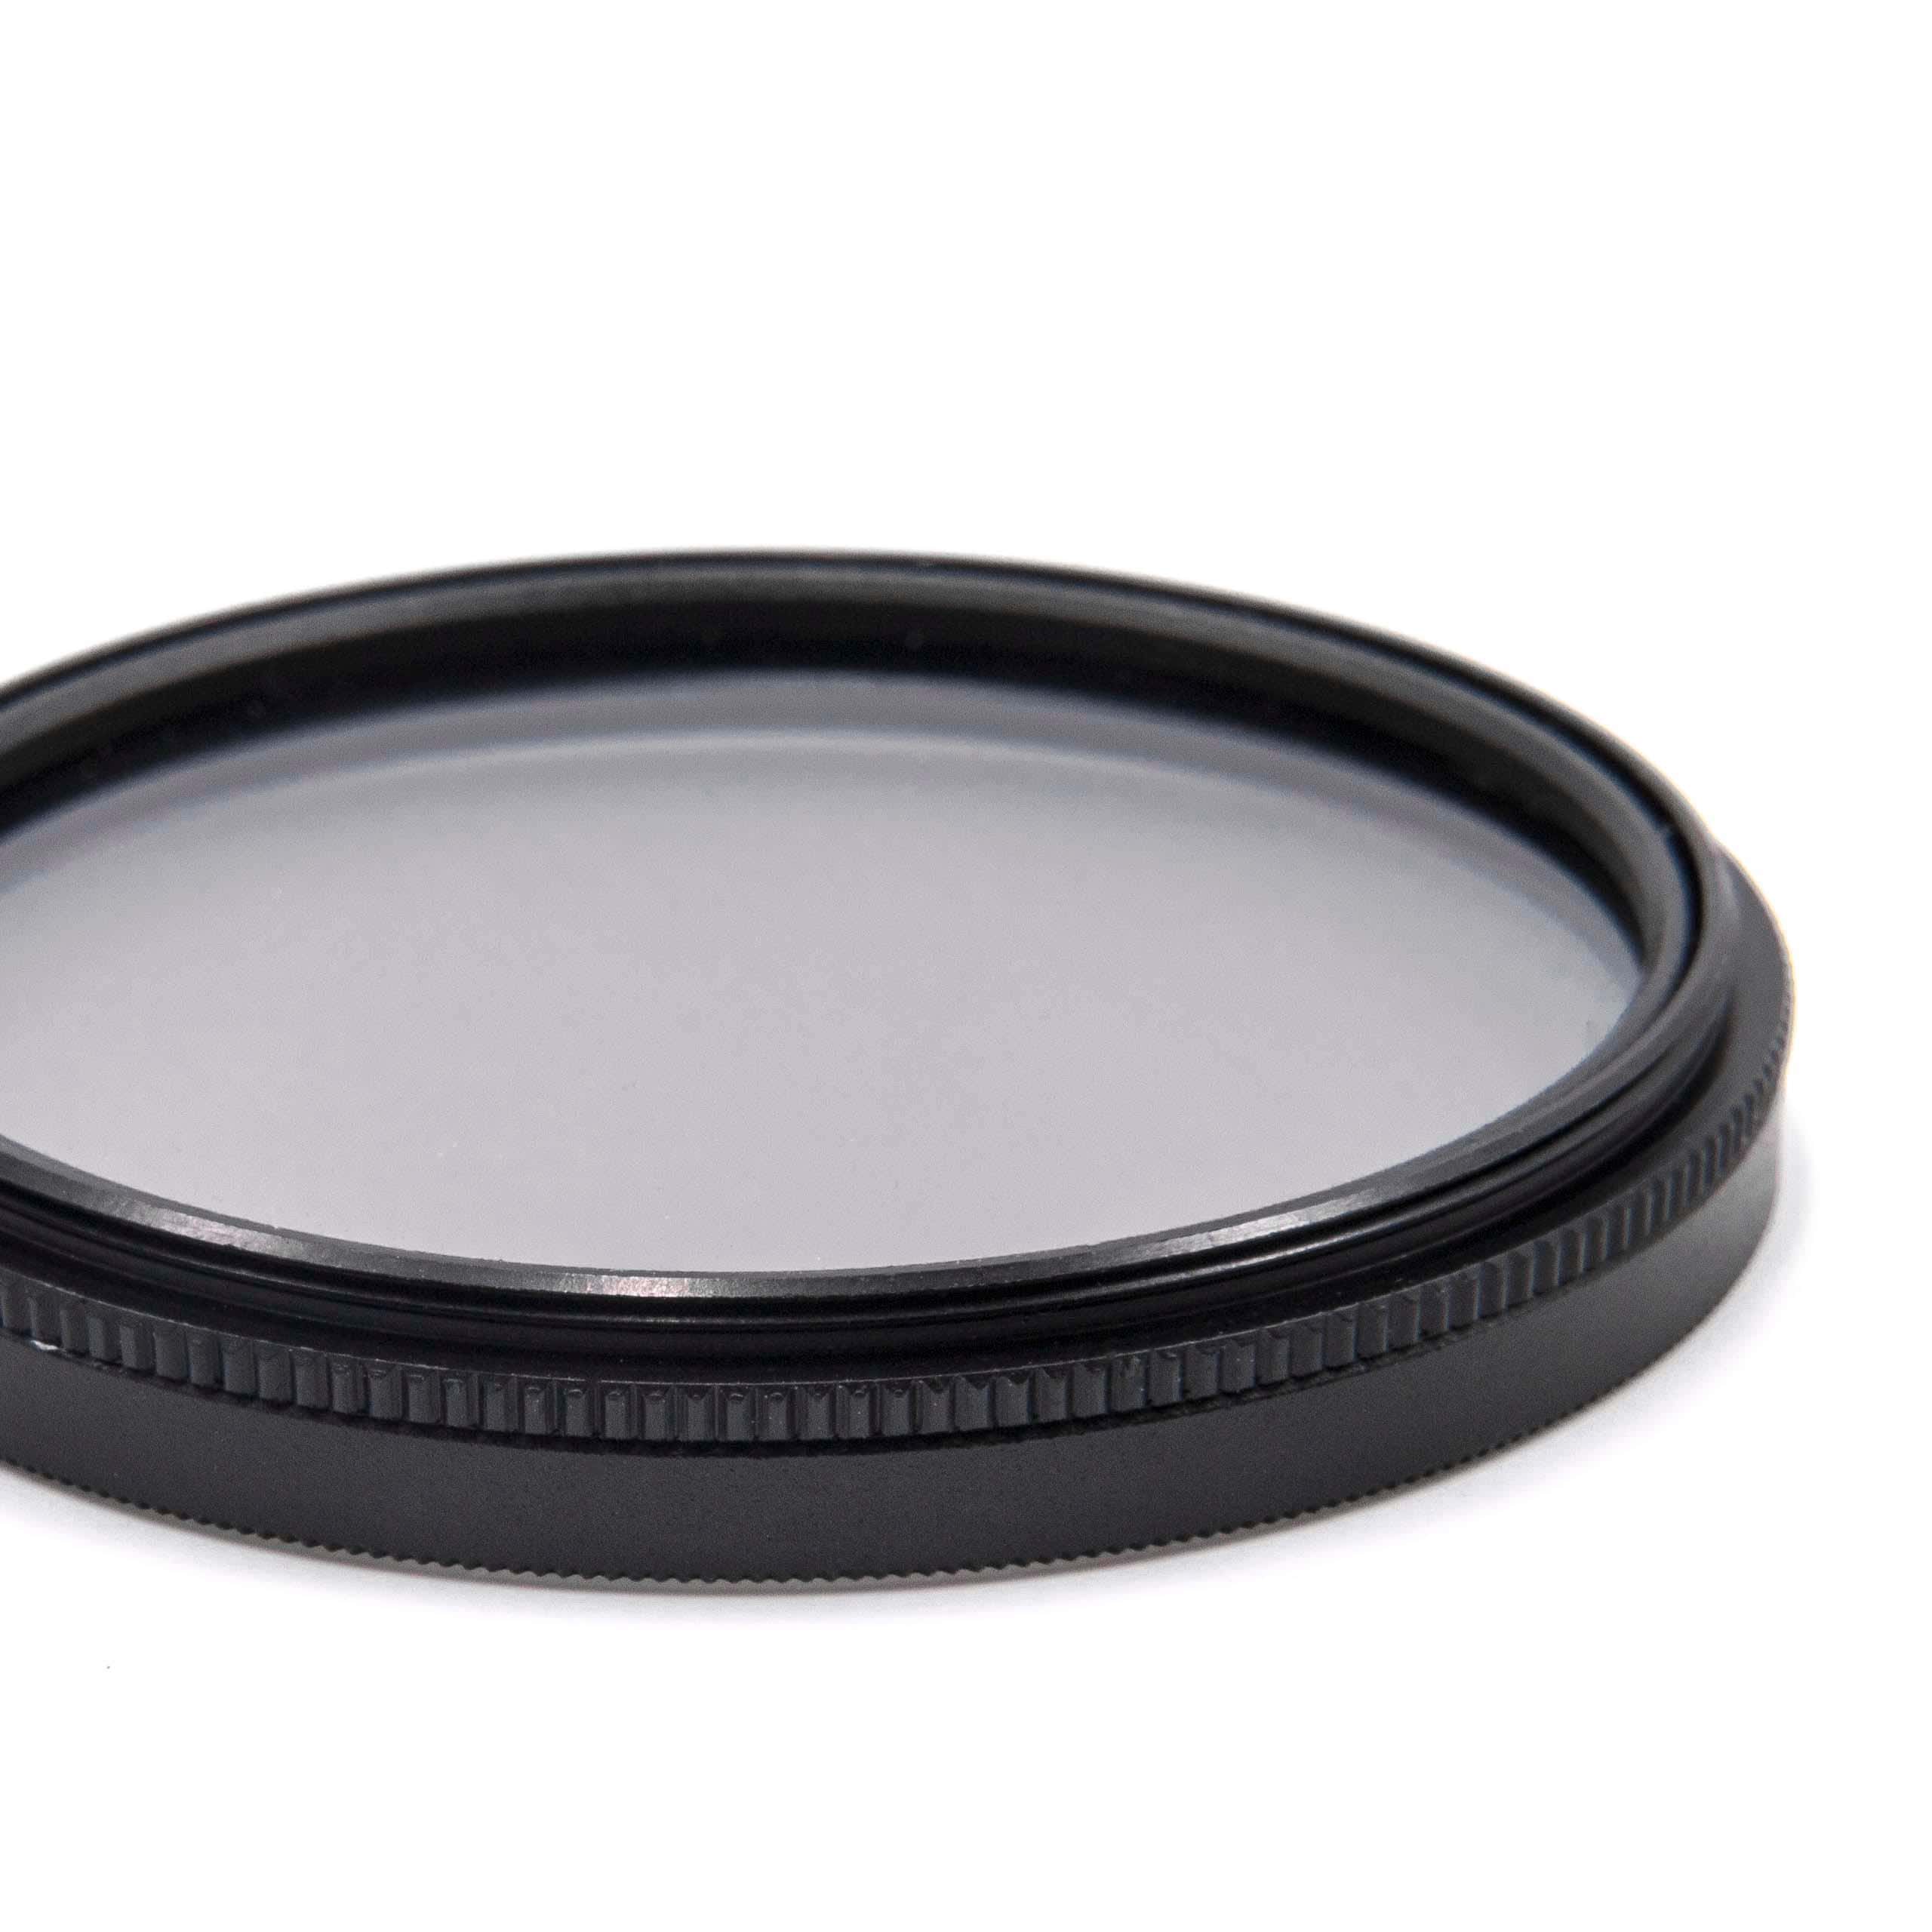 Filtr polaryzacyjny 52mm do różnych obiektywów aparatów - filtr CPL 